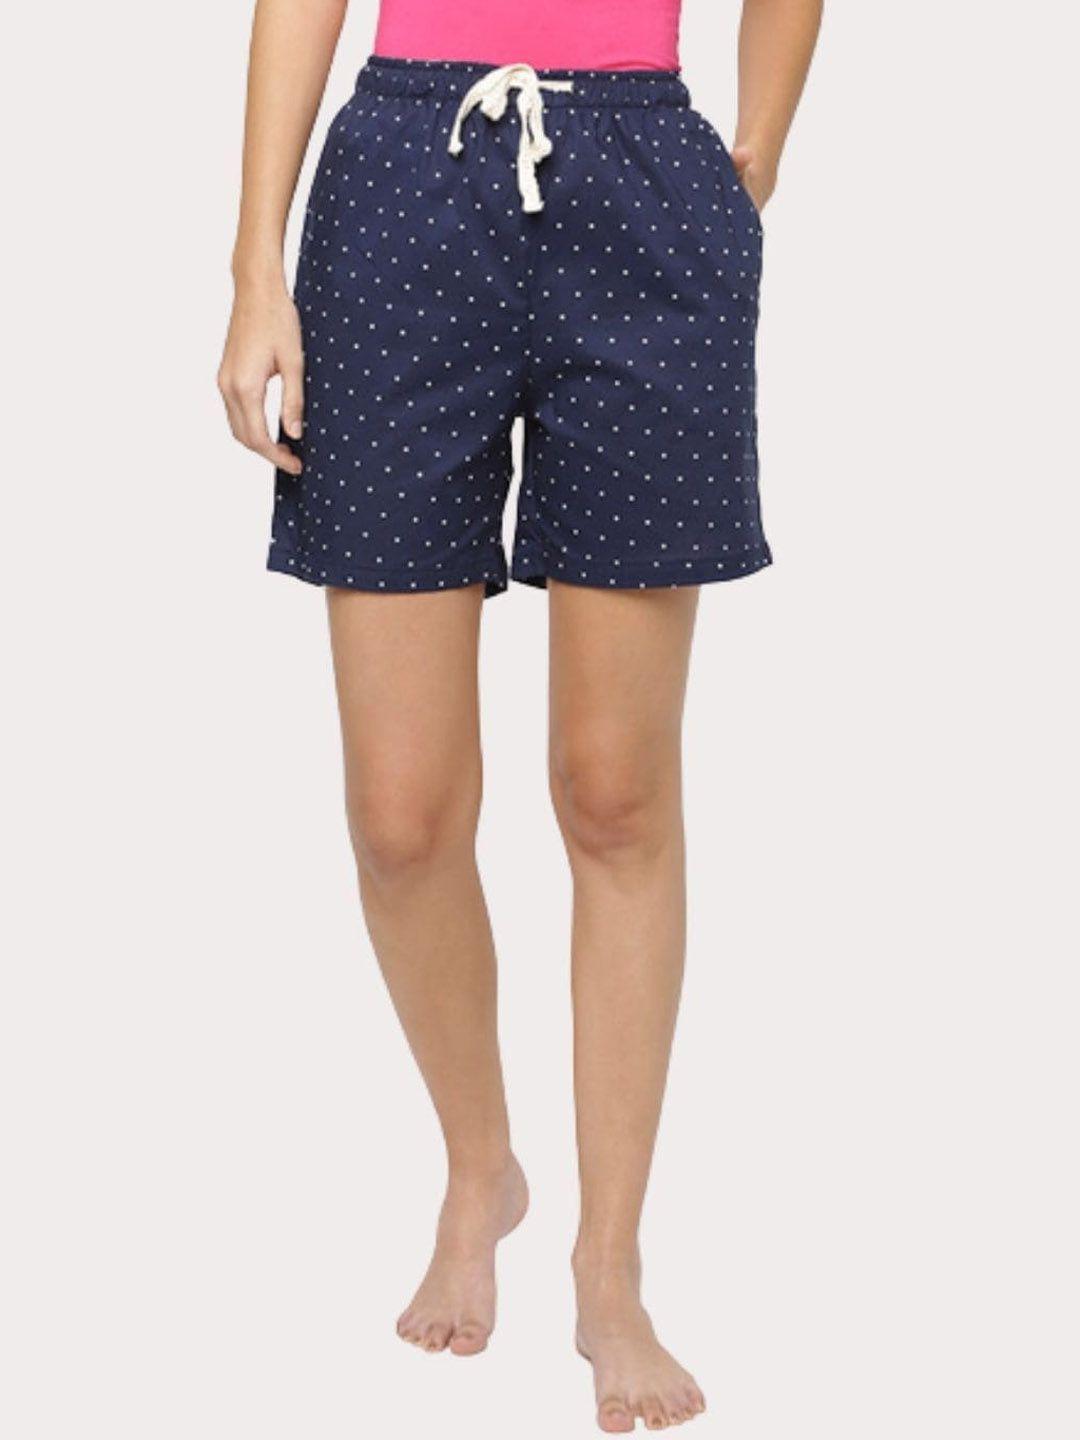 bareblow women polka dots printed outdoor shorts